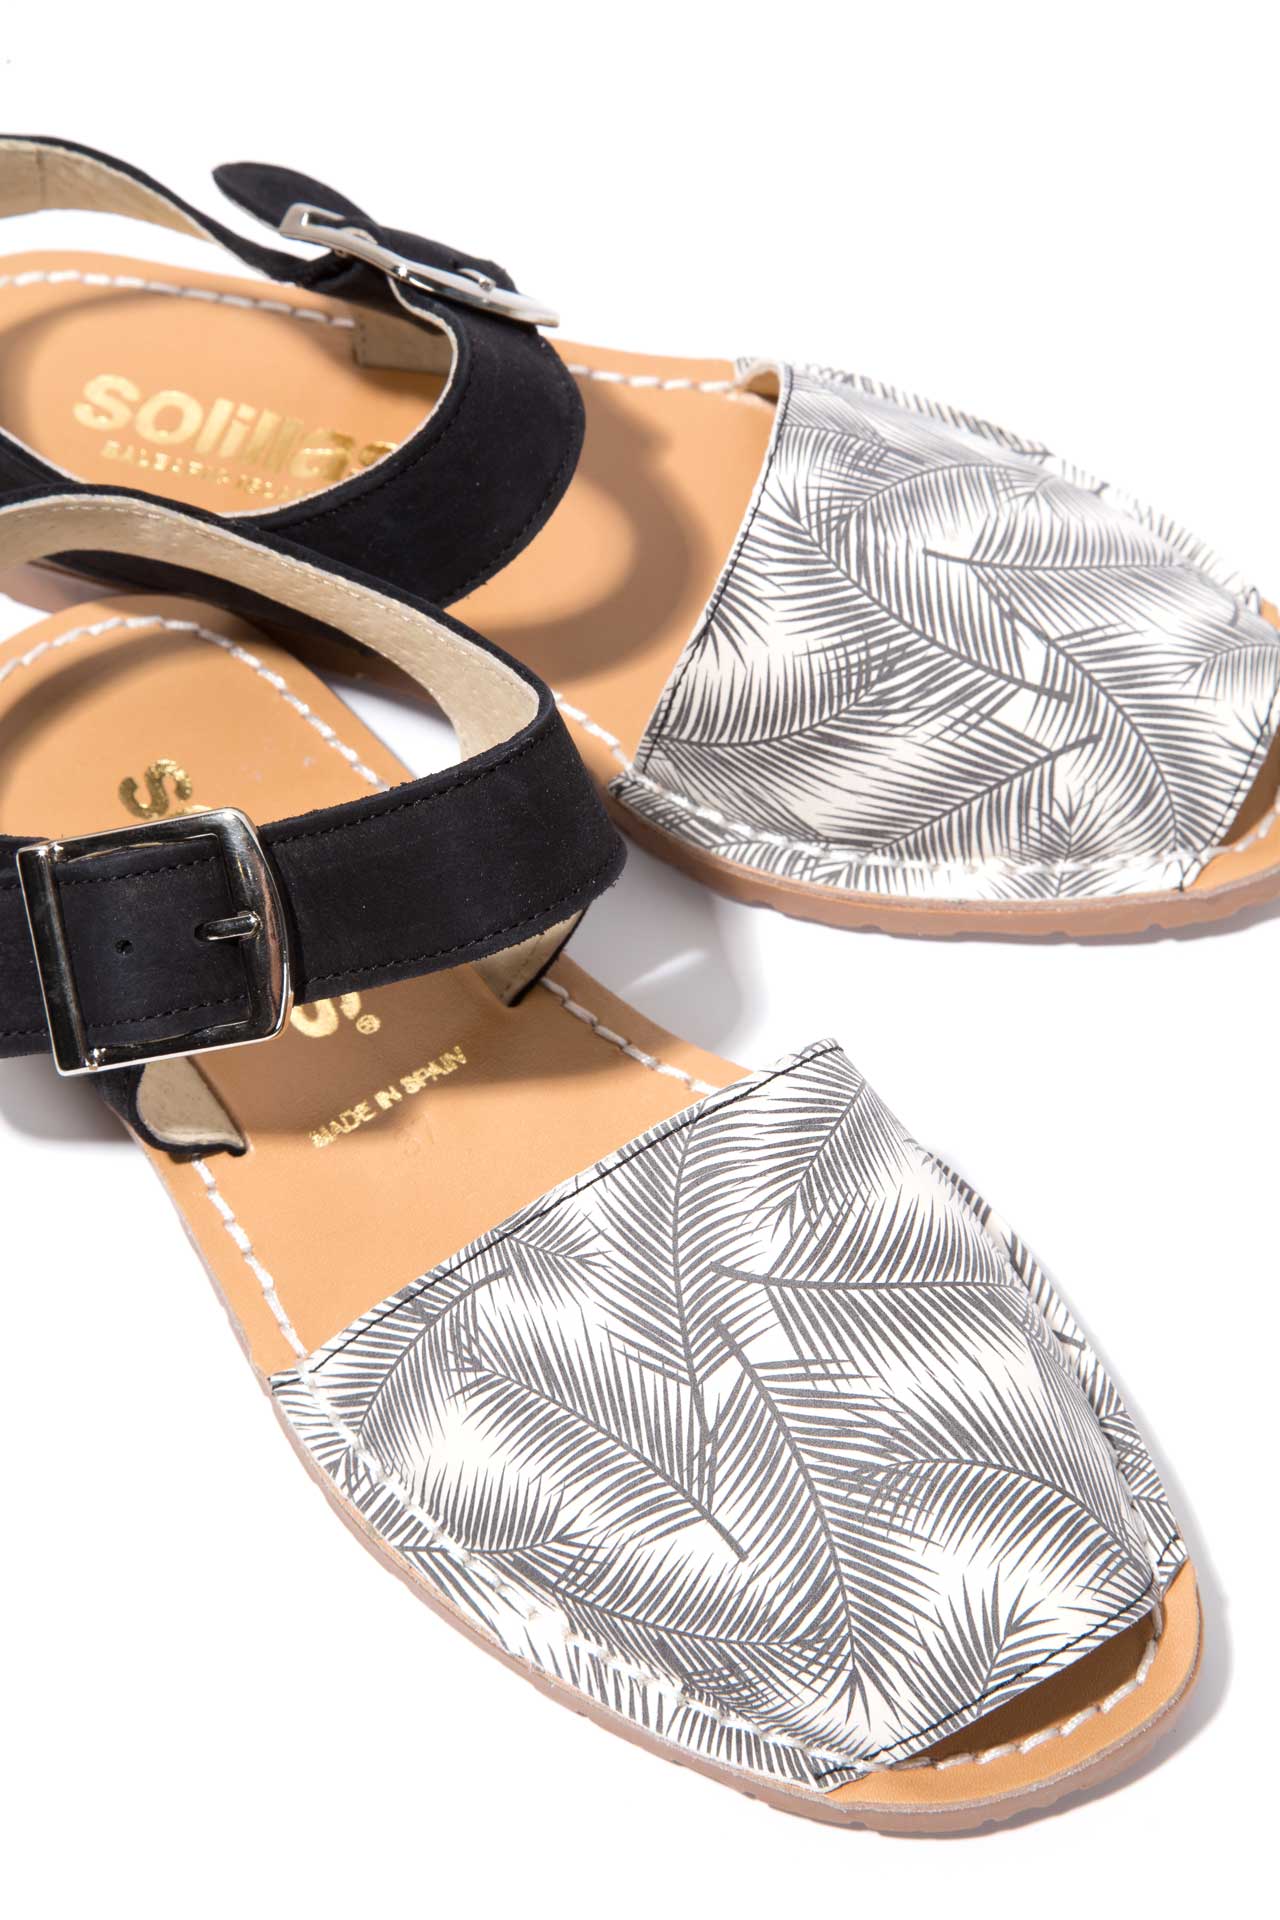 SOMBREADO PESCA - Palm Print Menorcan Sandals